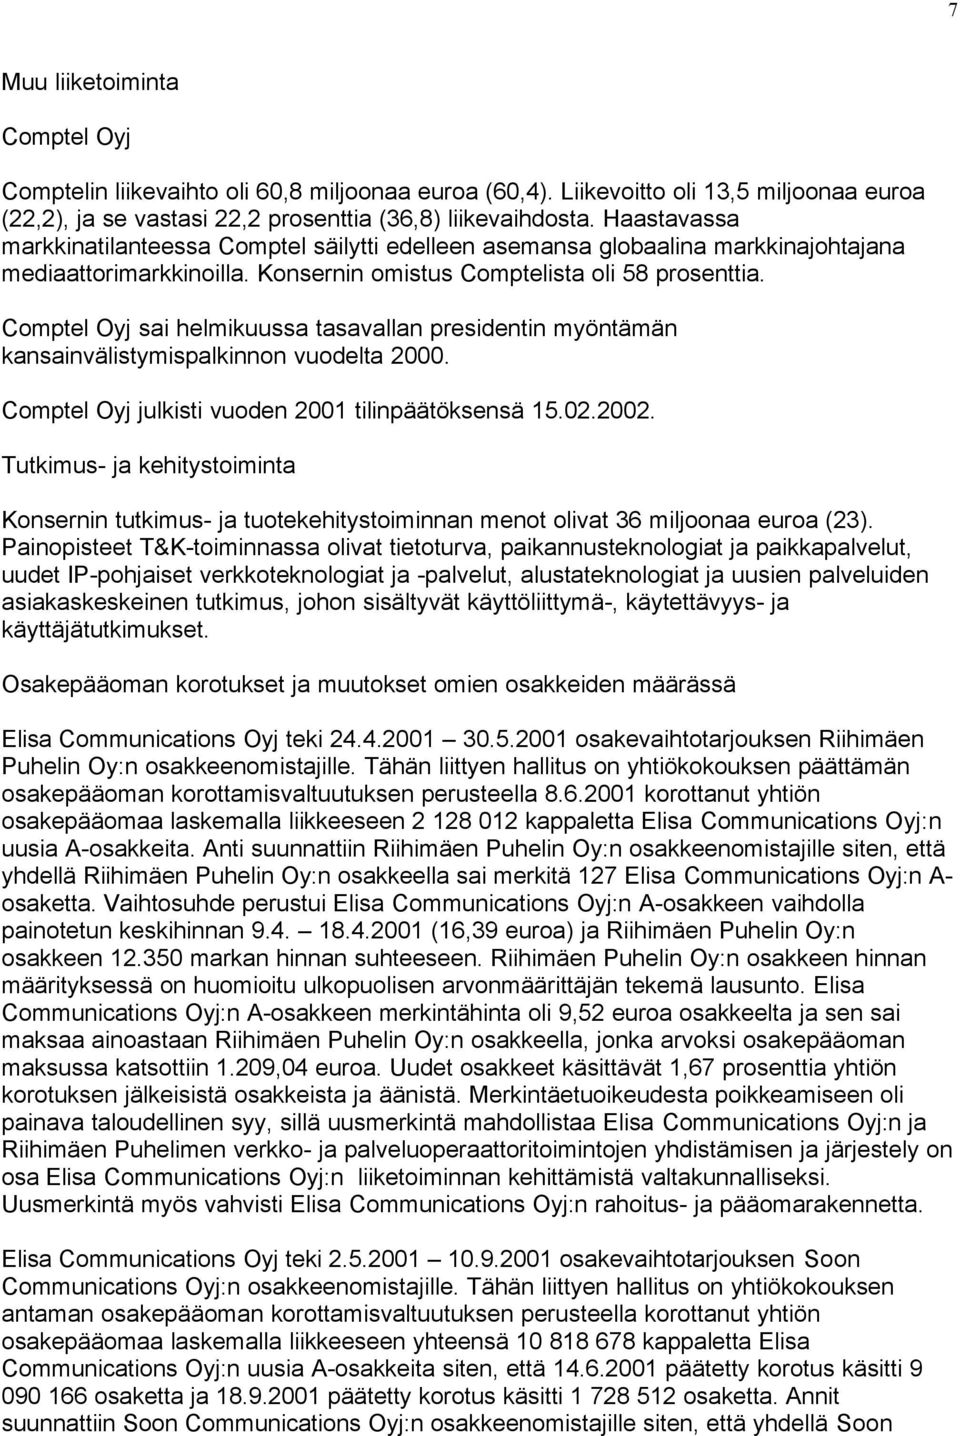 Comptel Oyj sai helmikuussa tasavallan presidentin myöntämän kansainvälistymispalkinnon vuodelta 2000. Comptel Oyj julkisti vuoden 2001 tilinpäätöksensä 15.02.2002.